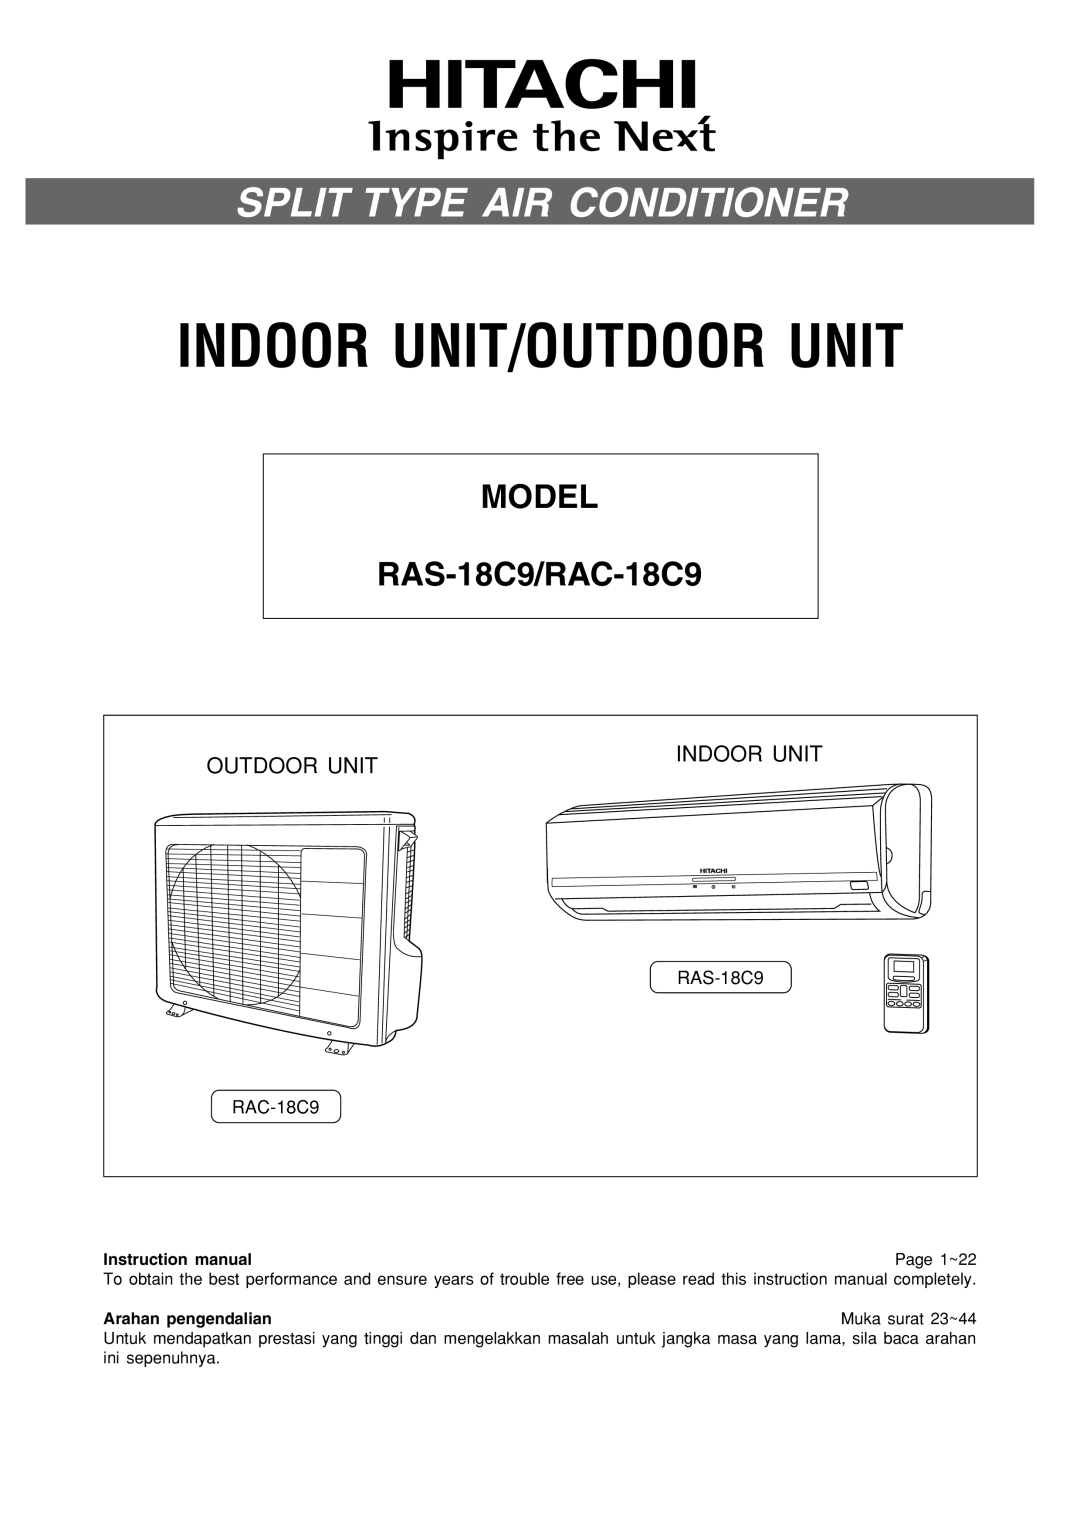 Philips instruction manual Split Type Air Conditioner, MODEL RAS-18C9/RAC-18C9, Outdoor Unit, Indoor Unit 